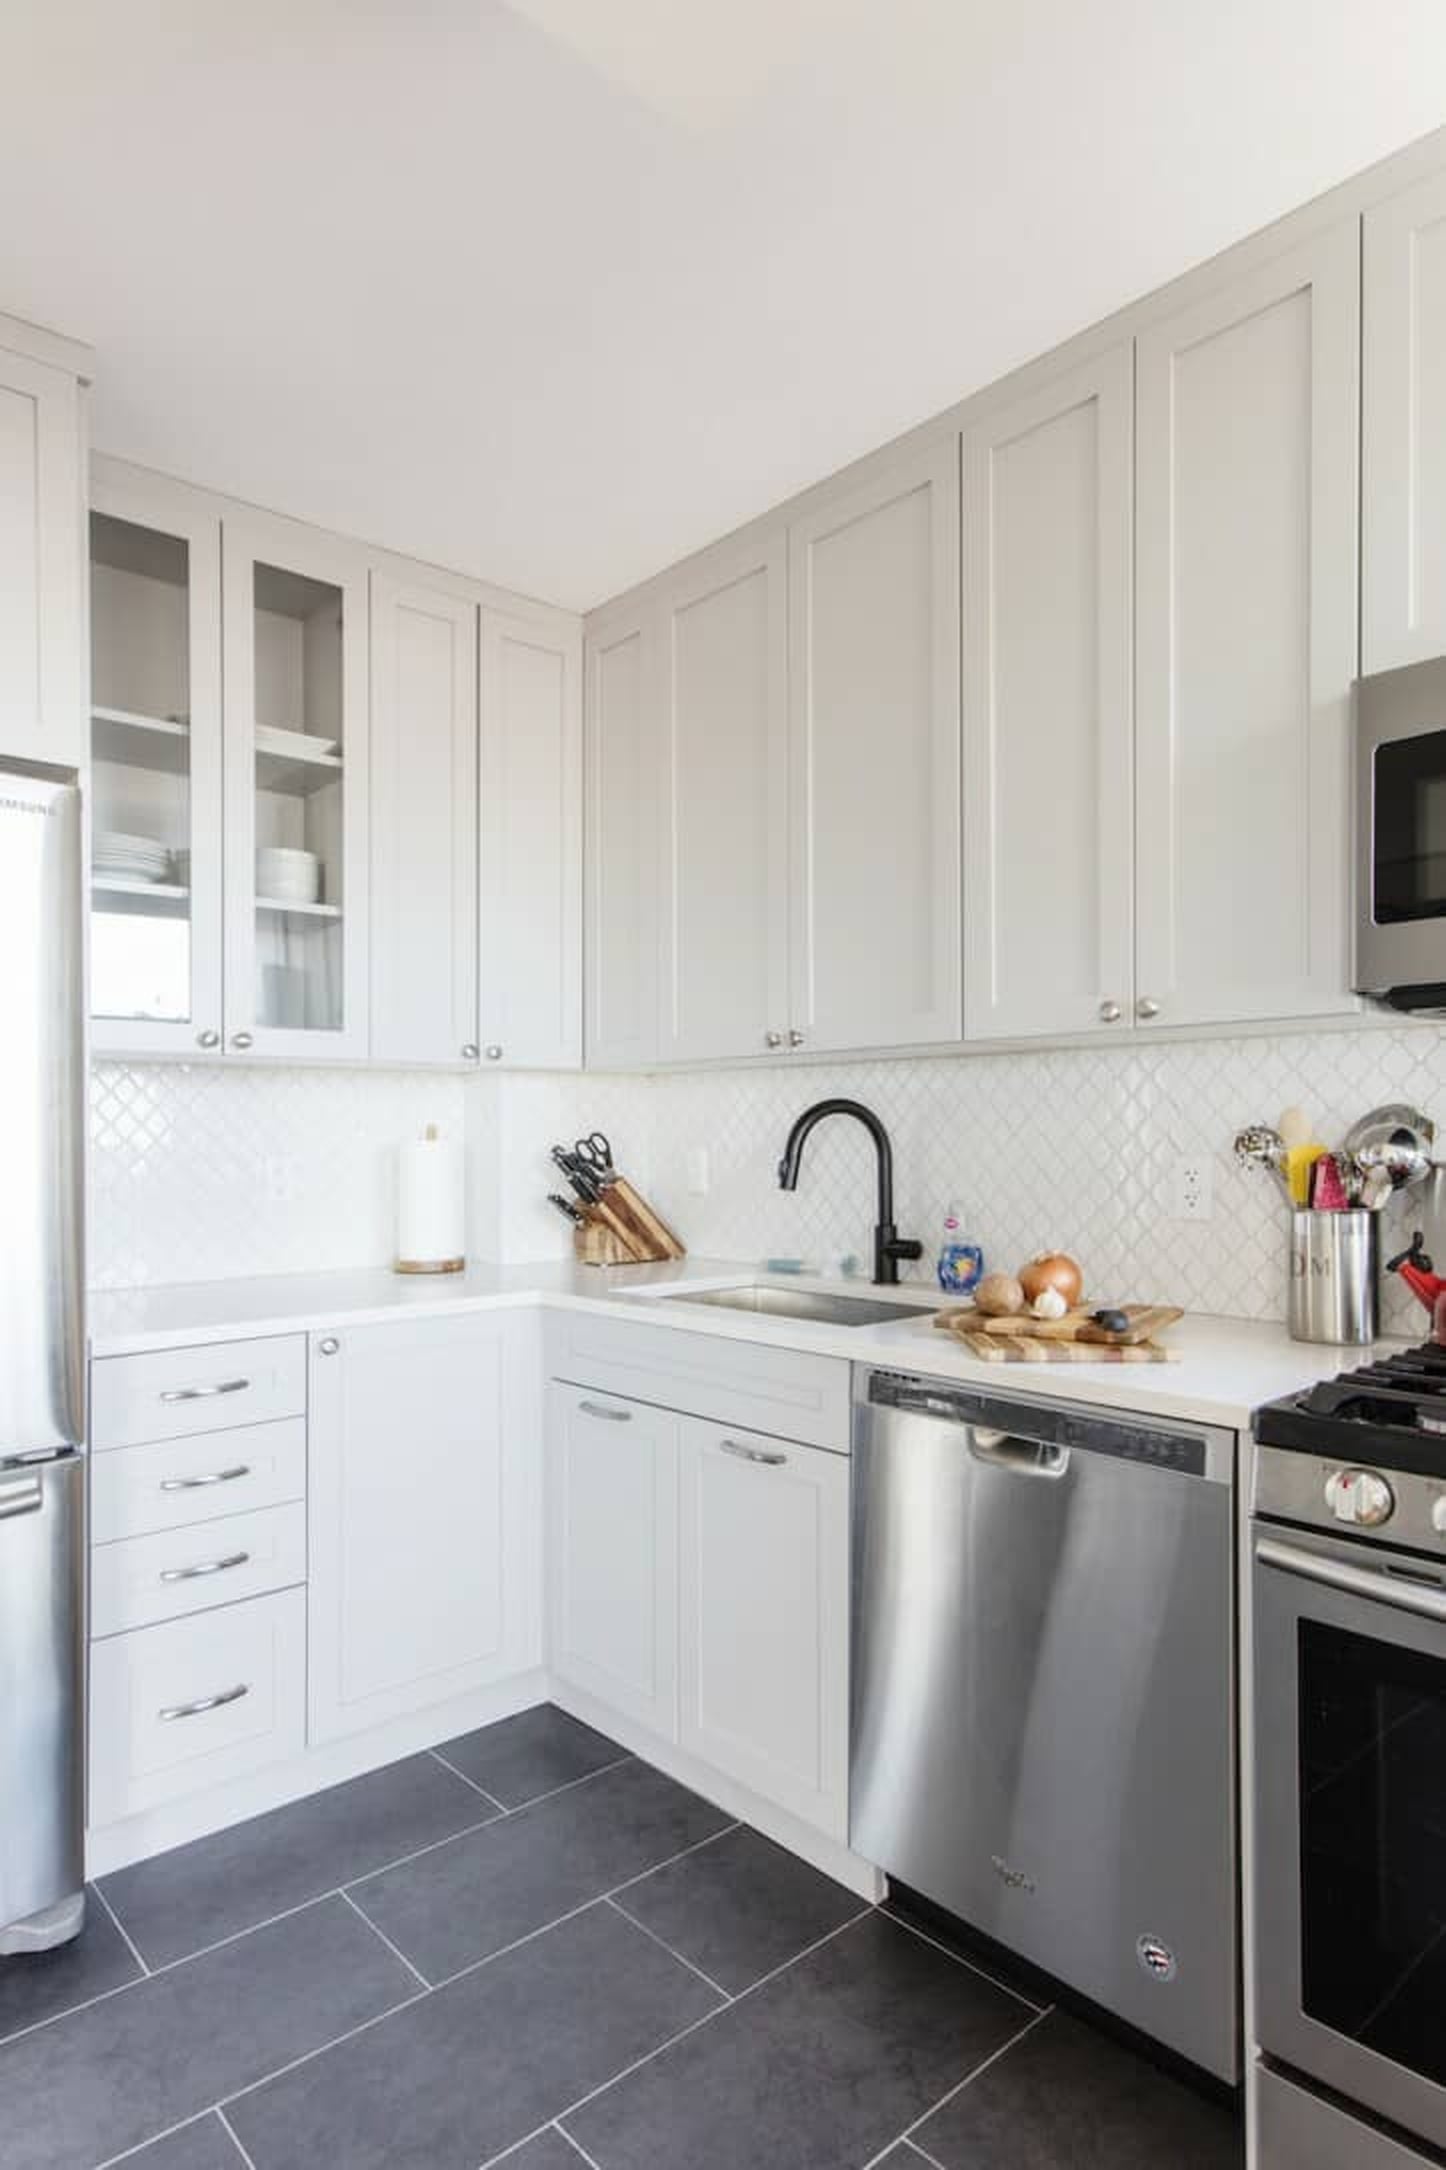 Best Kitchen Designs 2019 | POPSUGAR Home